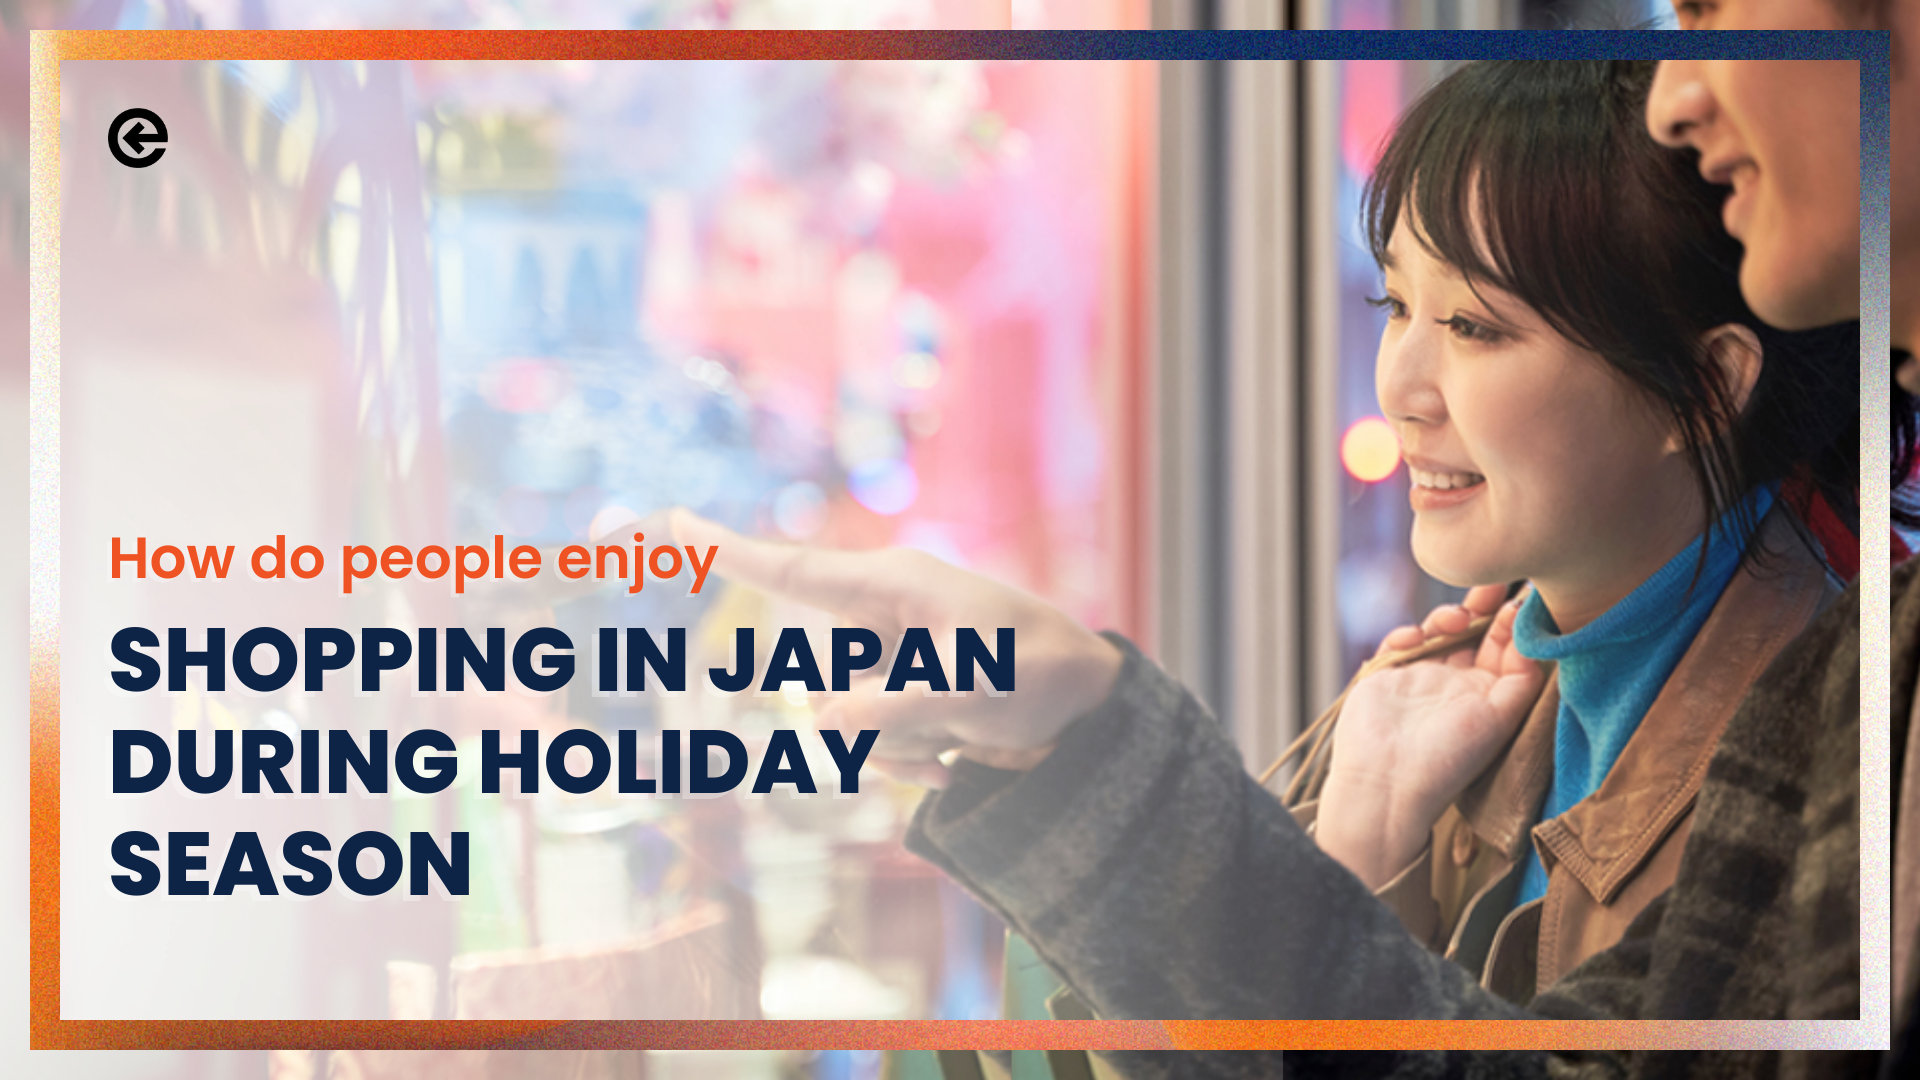 छुट्टियों के मौसम के दौरान जापान में लोग खरीदारी का आनंद कैसे लेते हैं?